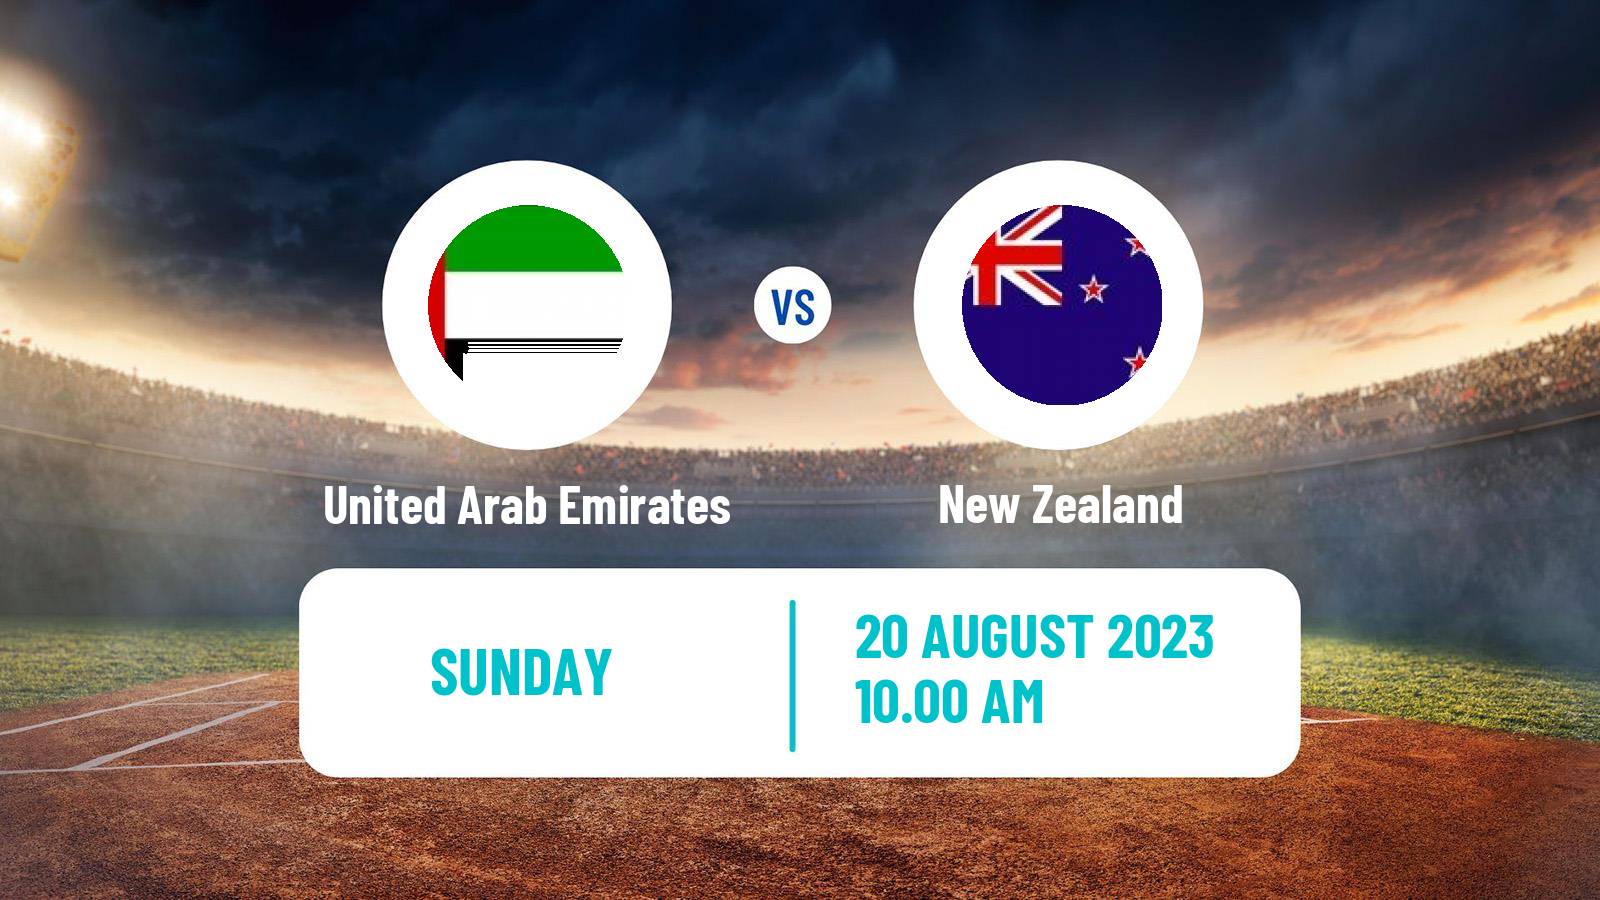 Cricket Twenty20 International United Arab Emirates - New Zealand